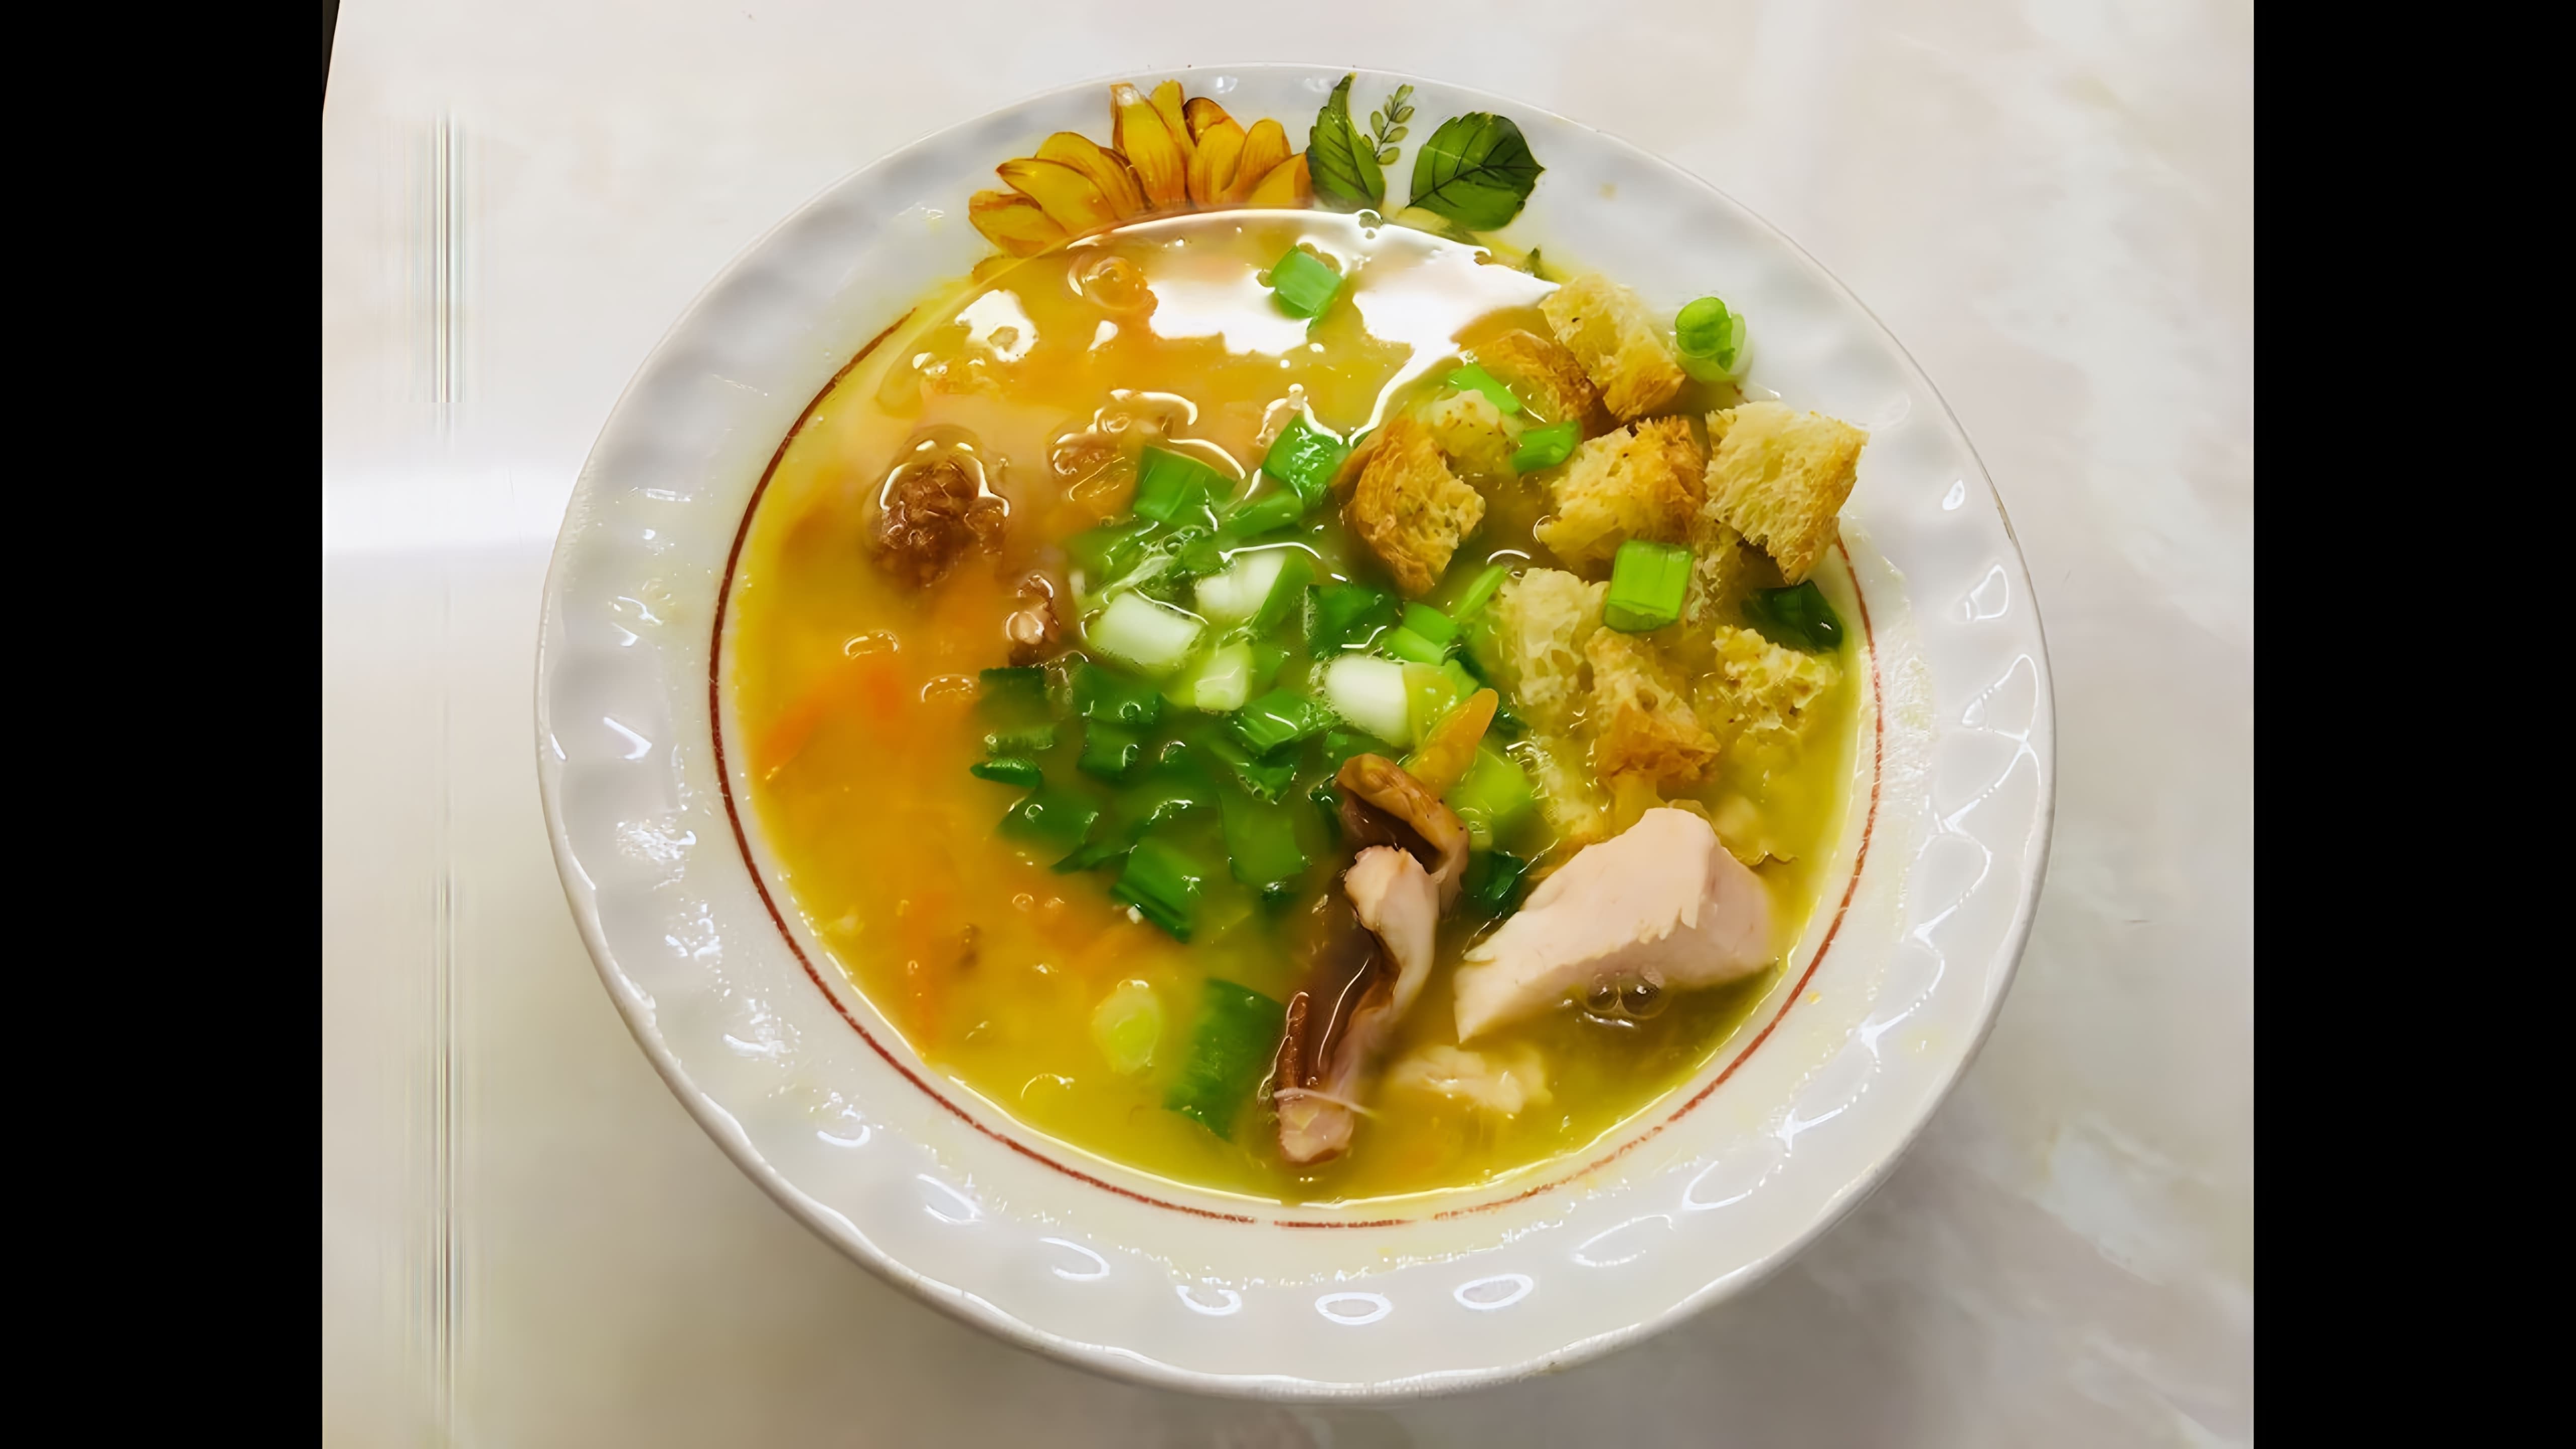 В этом видео демонстрируется процесс приготовления горохового супа с копчёной курицей и гренками